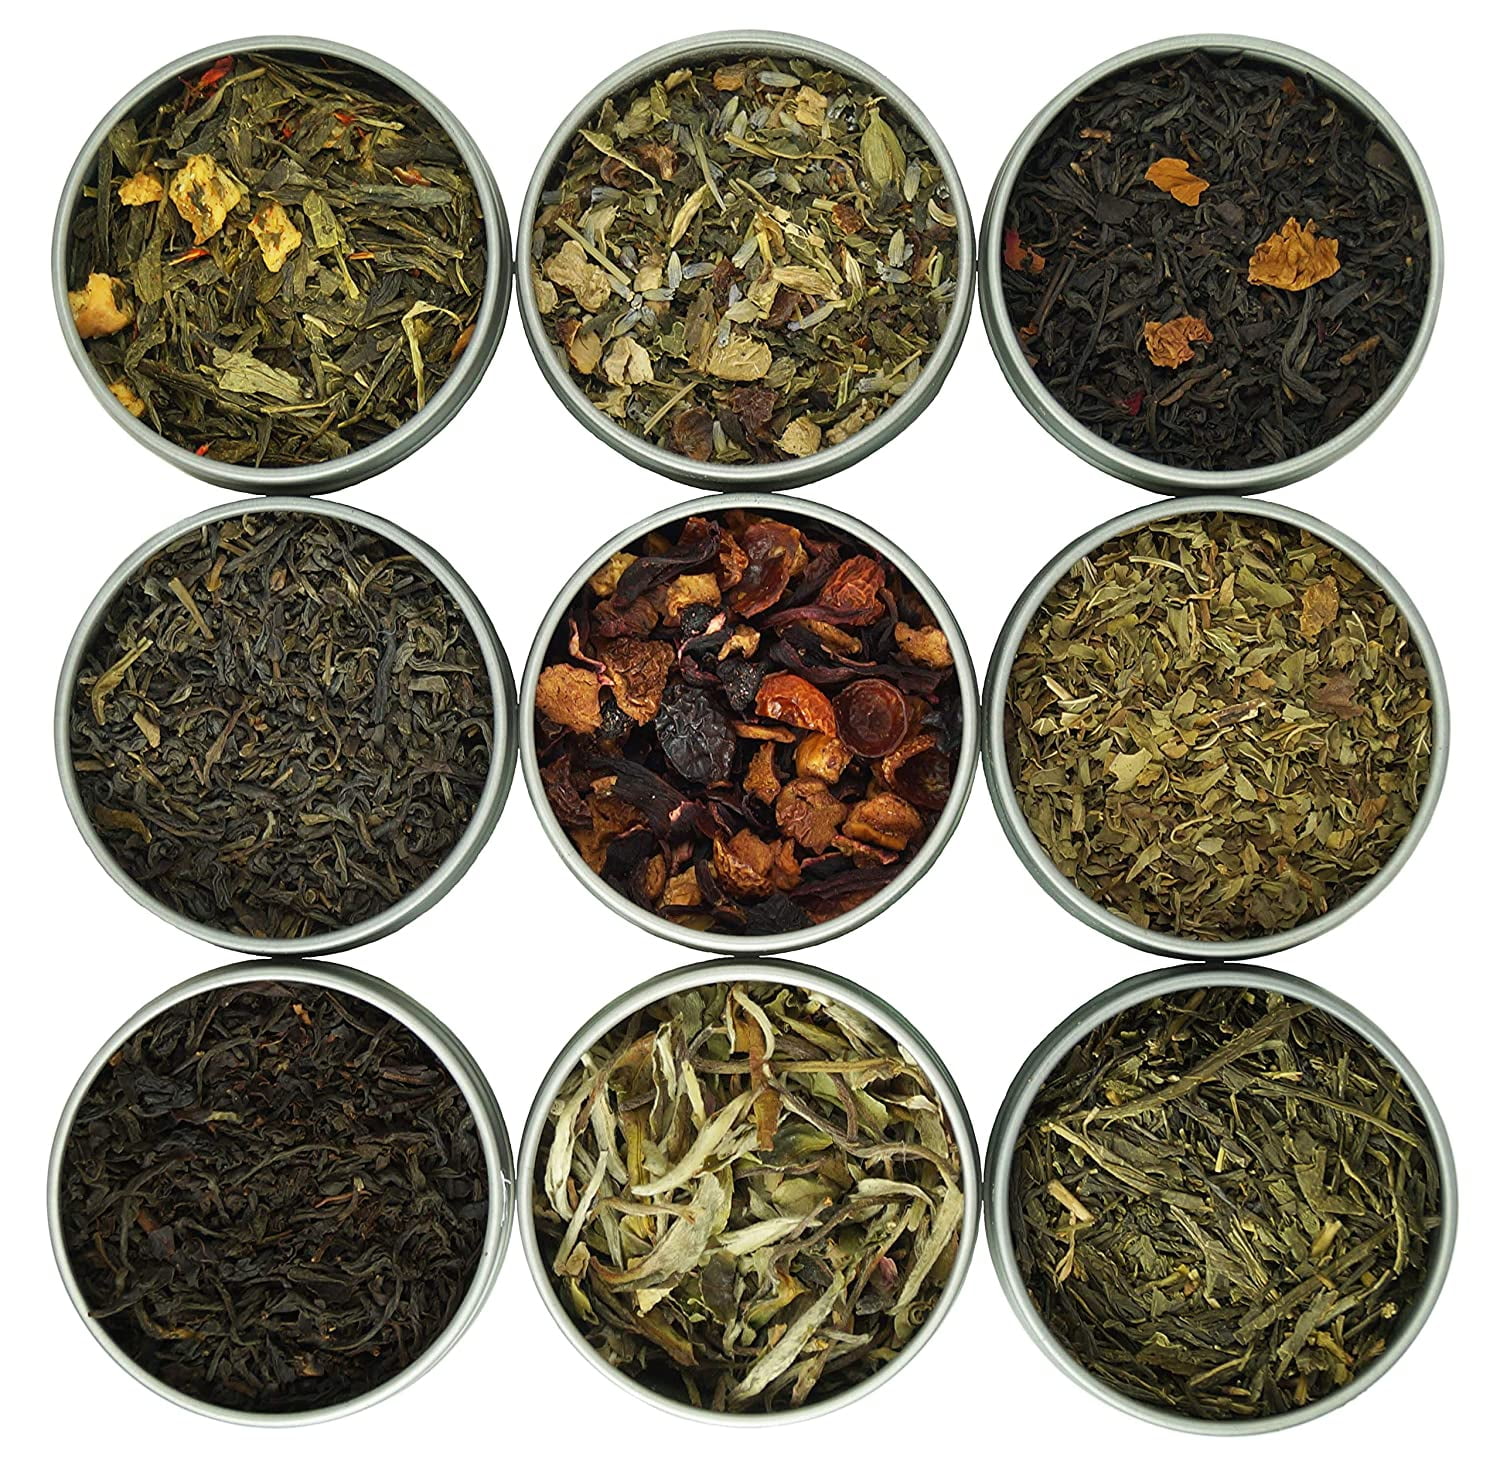 Heavenly Tea Leaves Assorted 9 Loose Leaf Tea Gift Box, 9 Loose Leaf